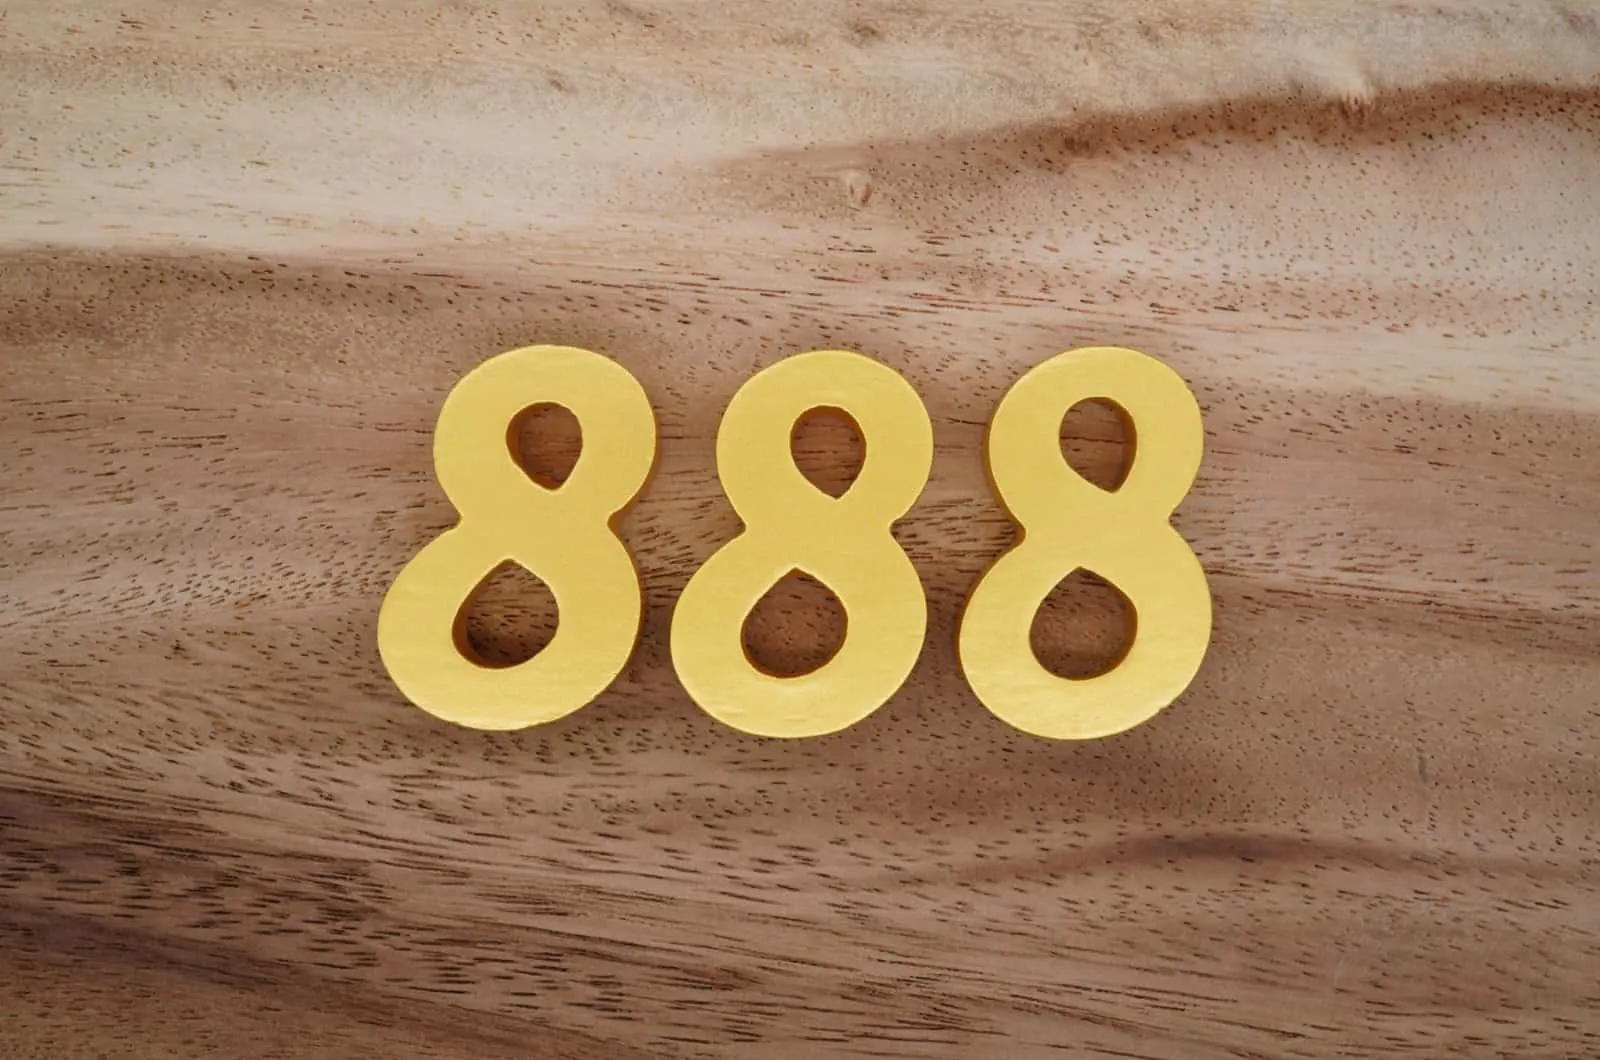 Engelszahl 888 aus Holz